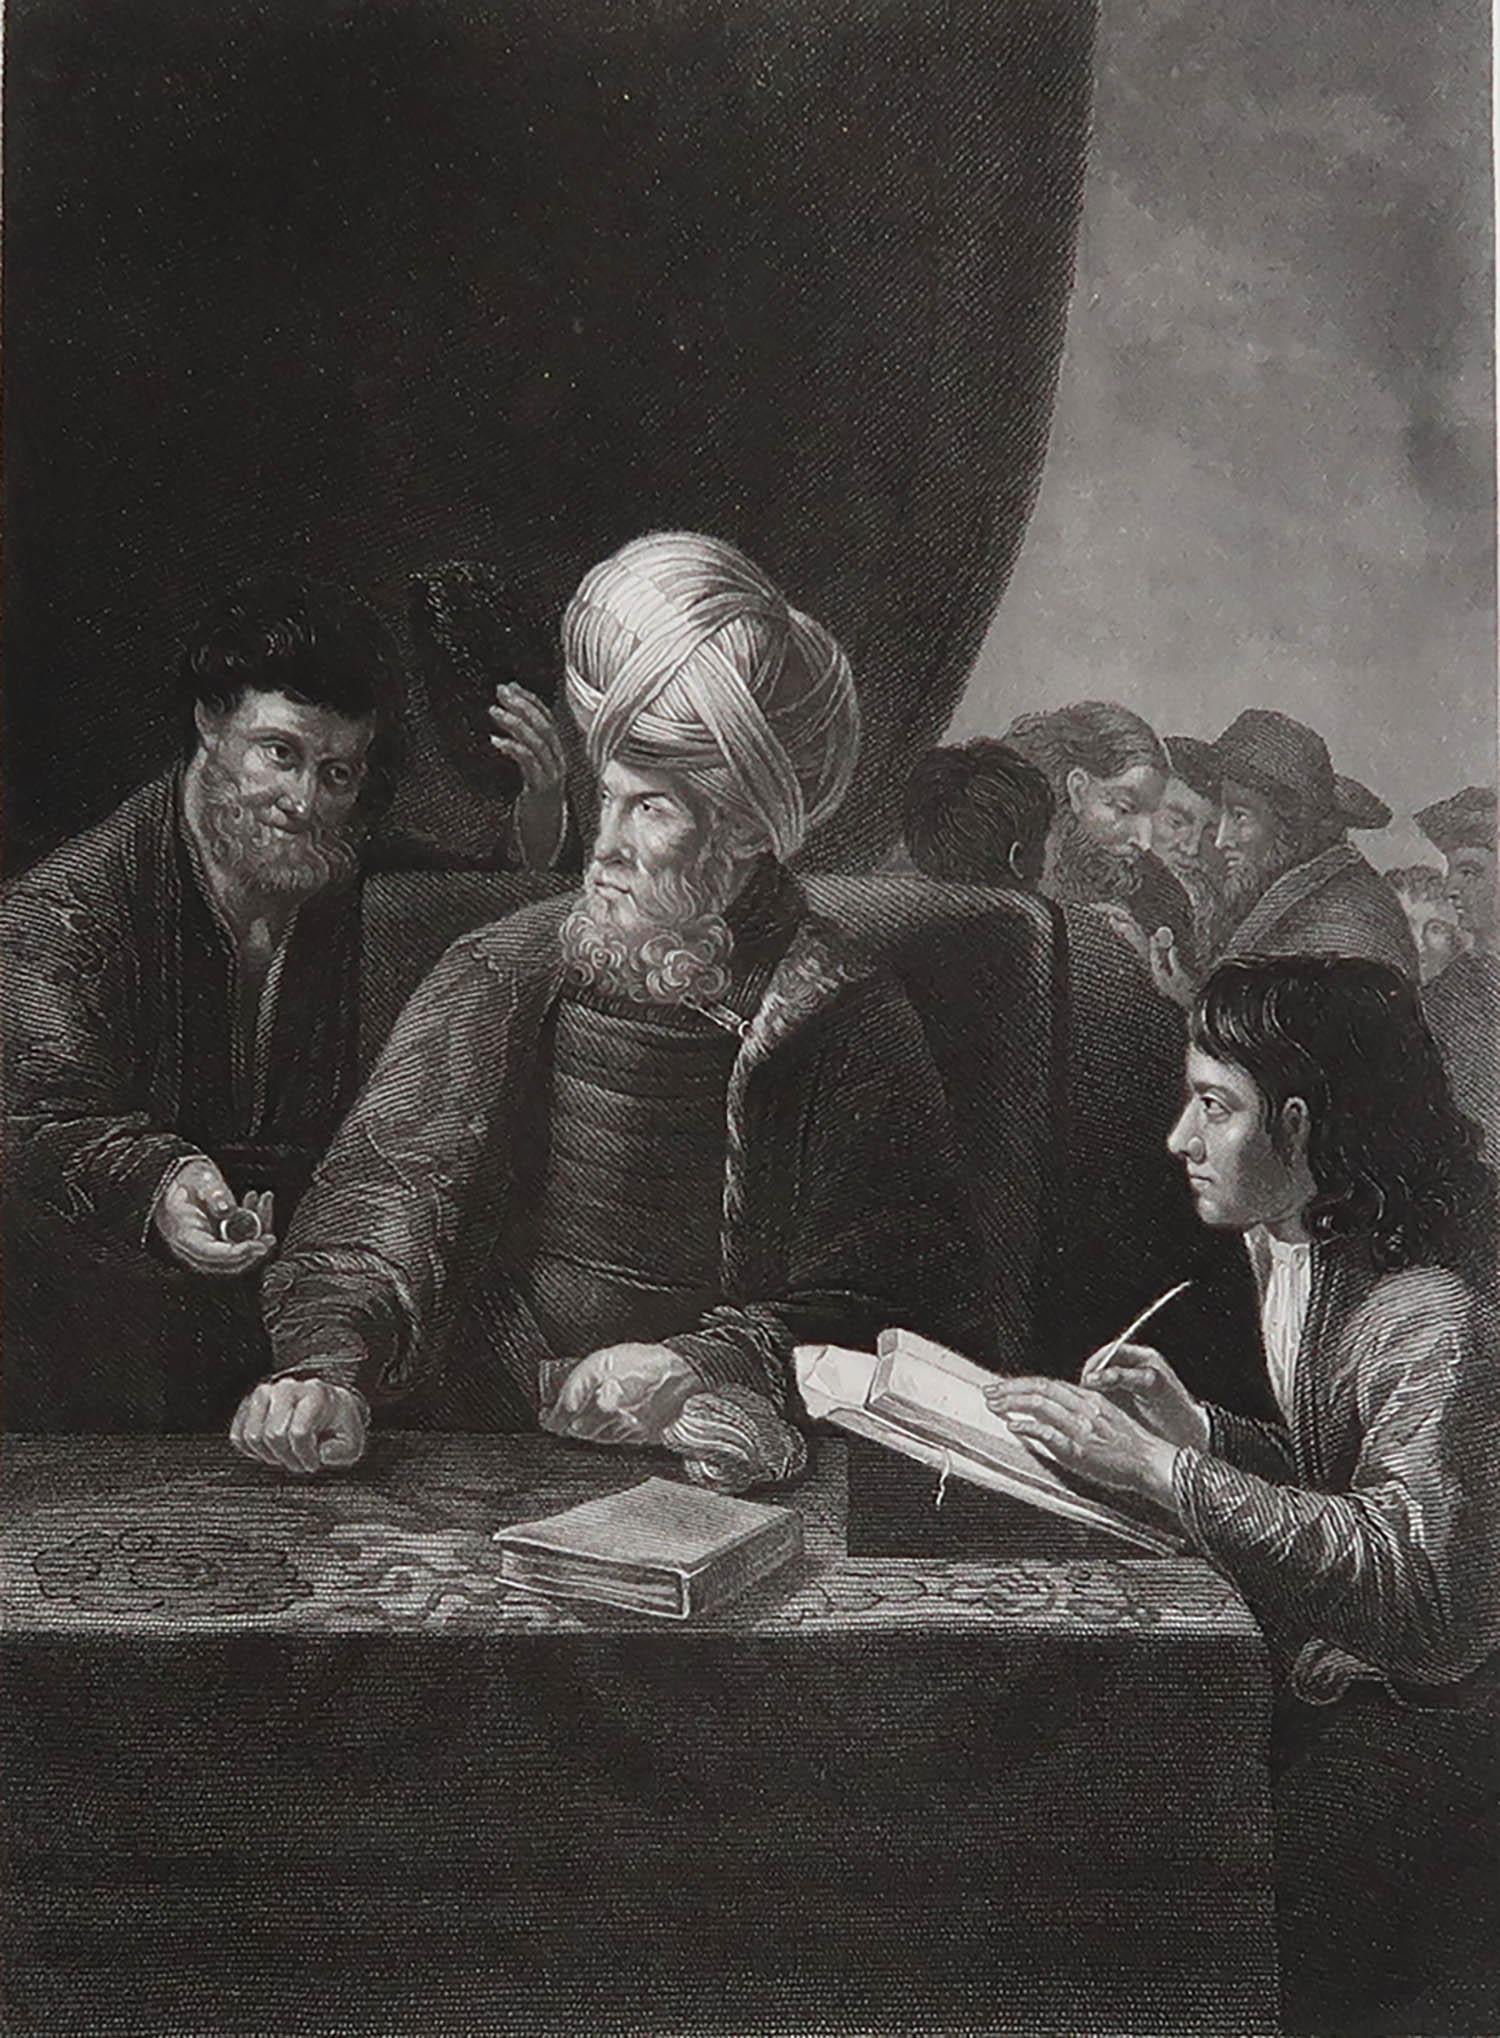 Wunderschönes Bild nach Rembrandt.

Feiner Stahlstich. 

Herausgegeben von Fisher, London. ca. 1840

Ungerahmt.

